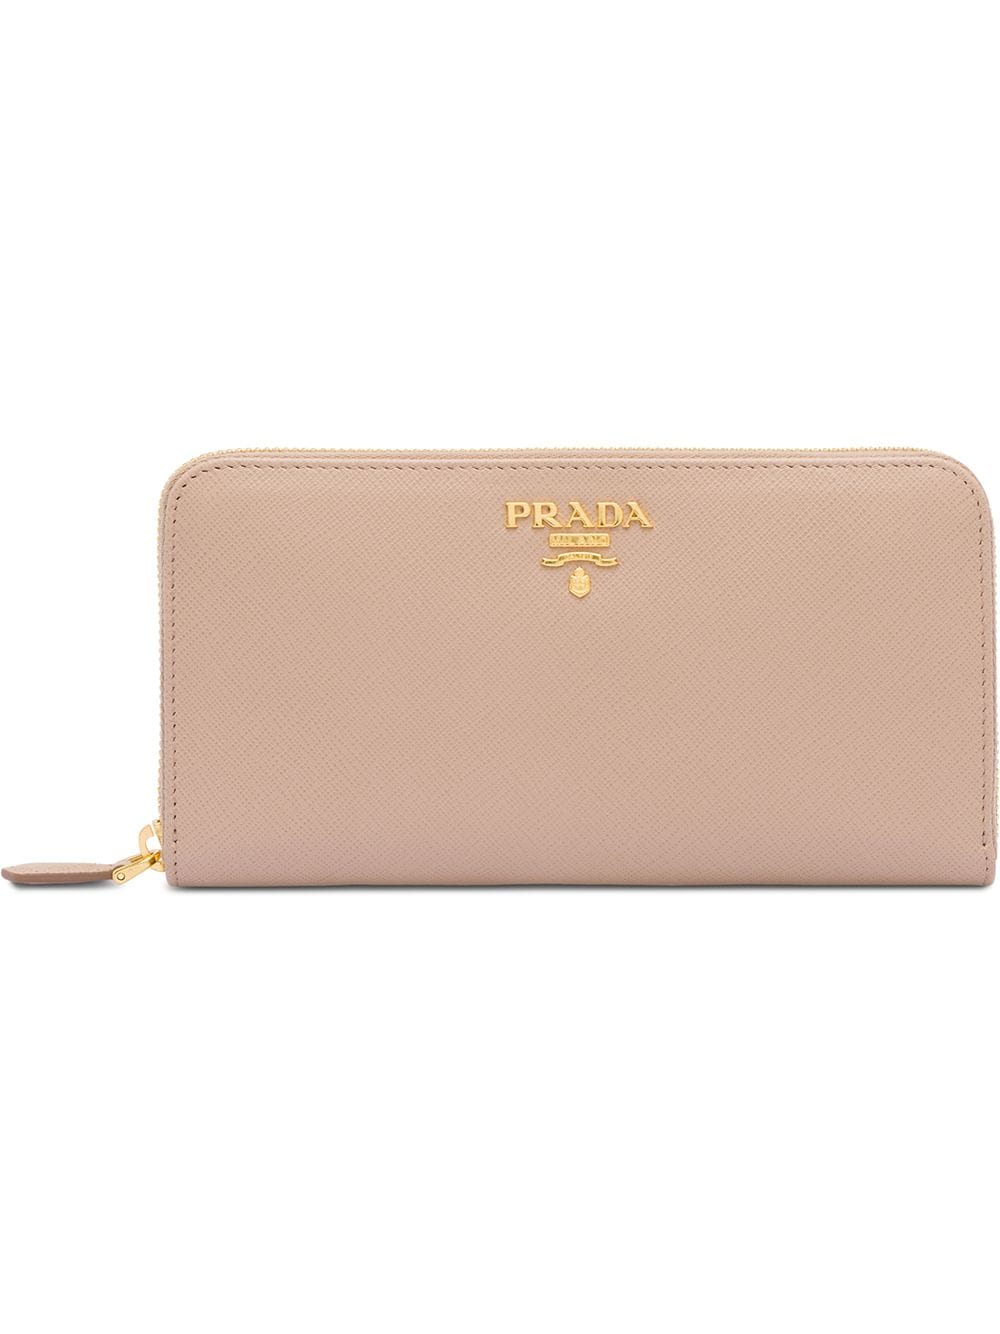 Prada logo plaque wallet - Pink von Prada